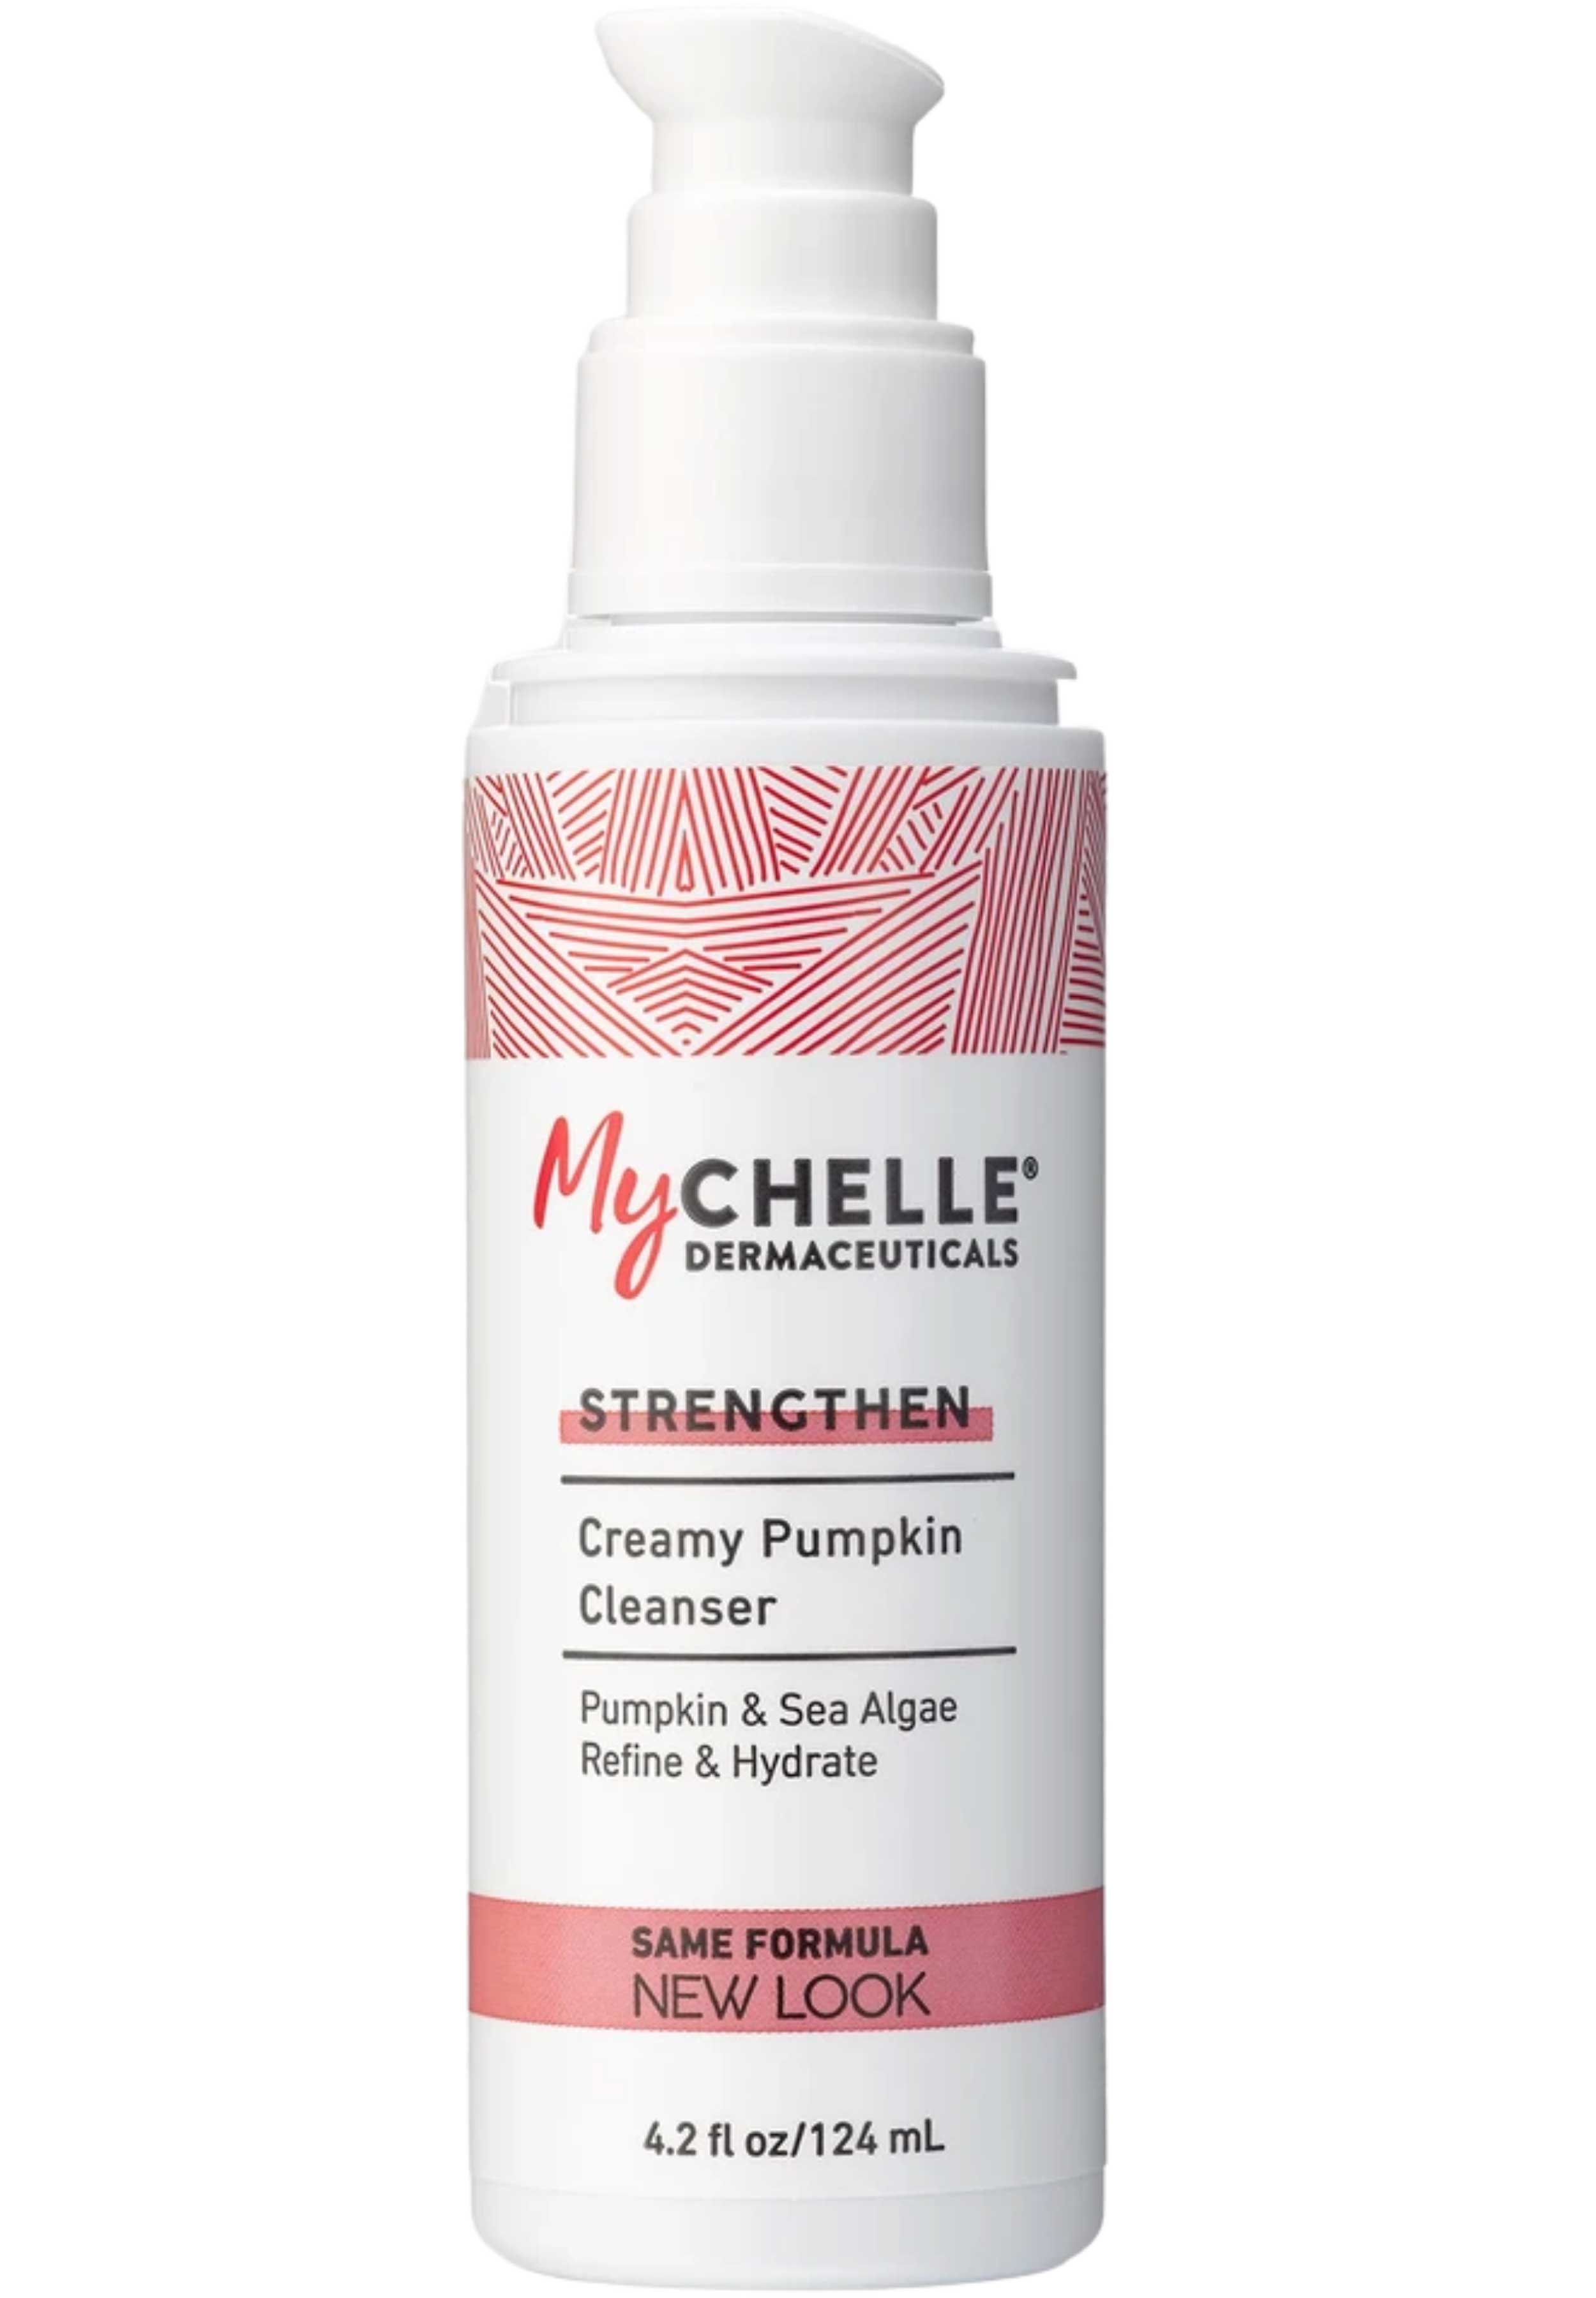 MyChelle Dermaceuticals Creamy Pumpkin Cleanser